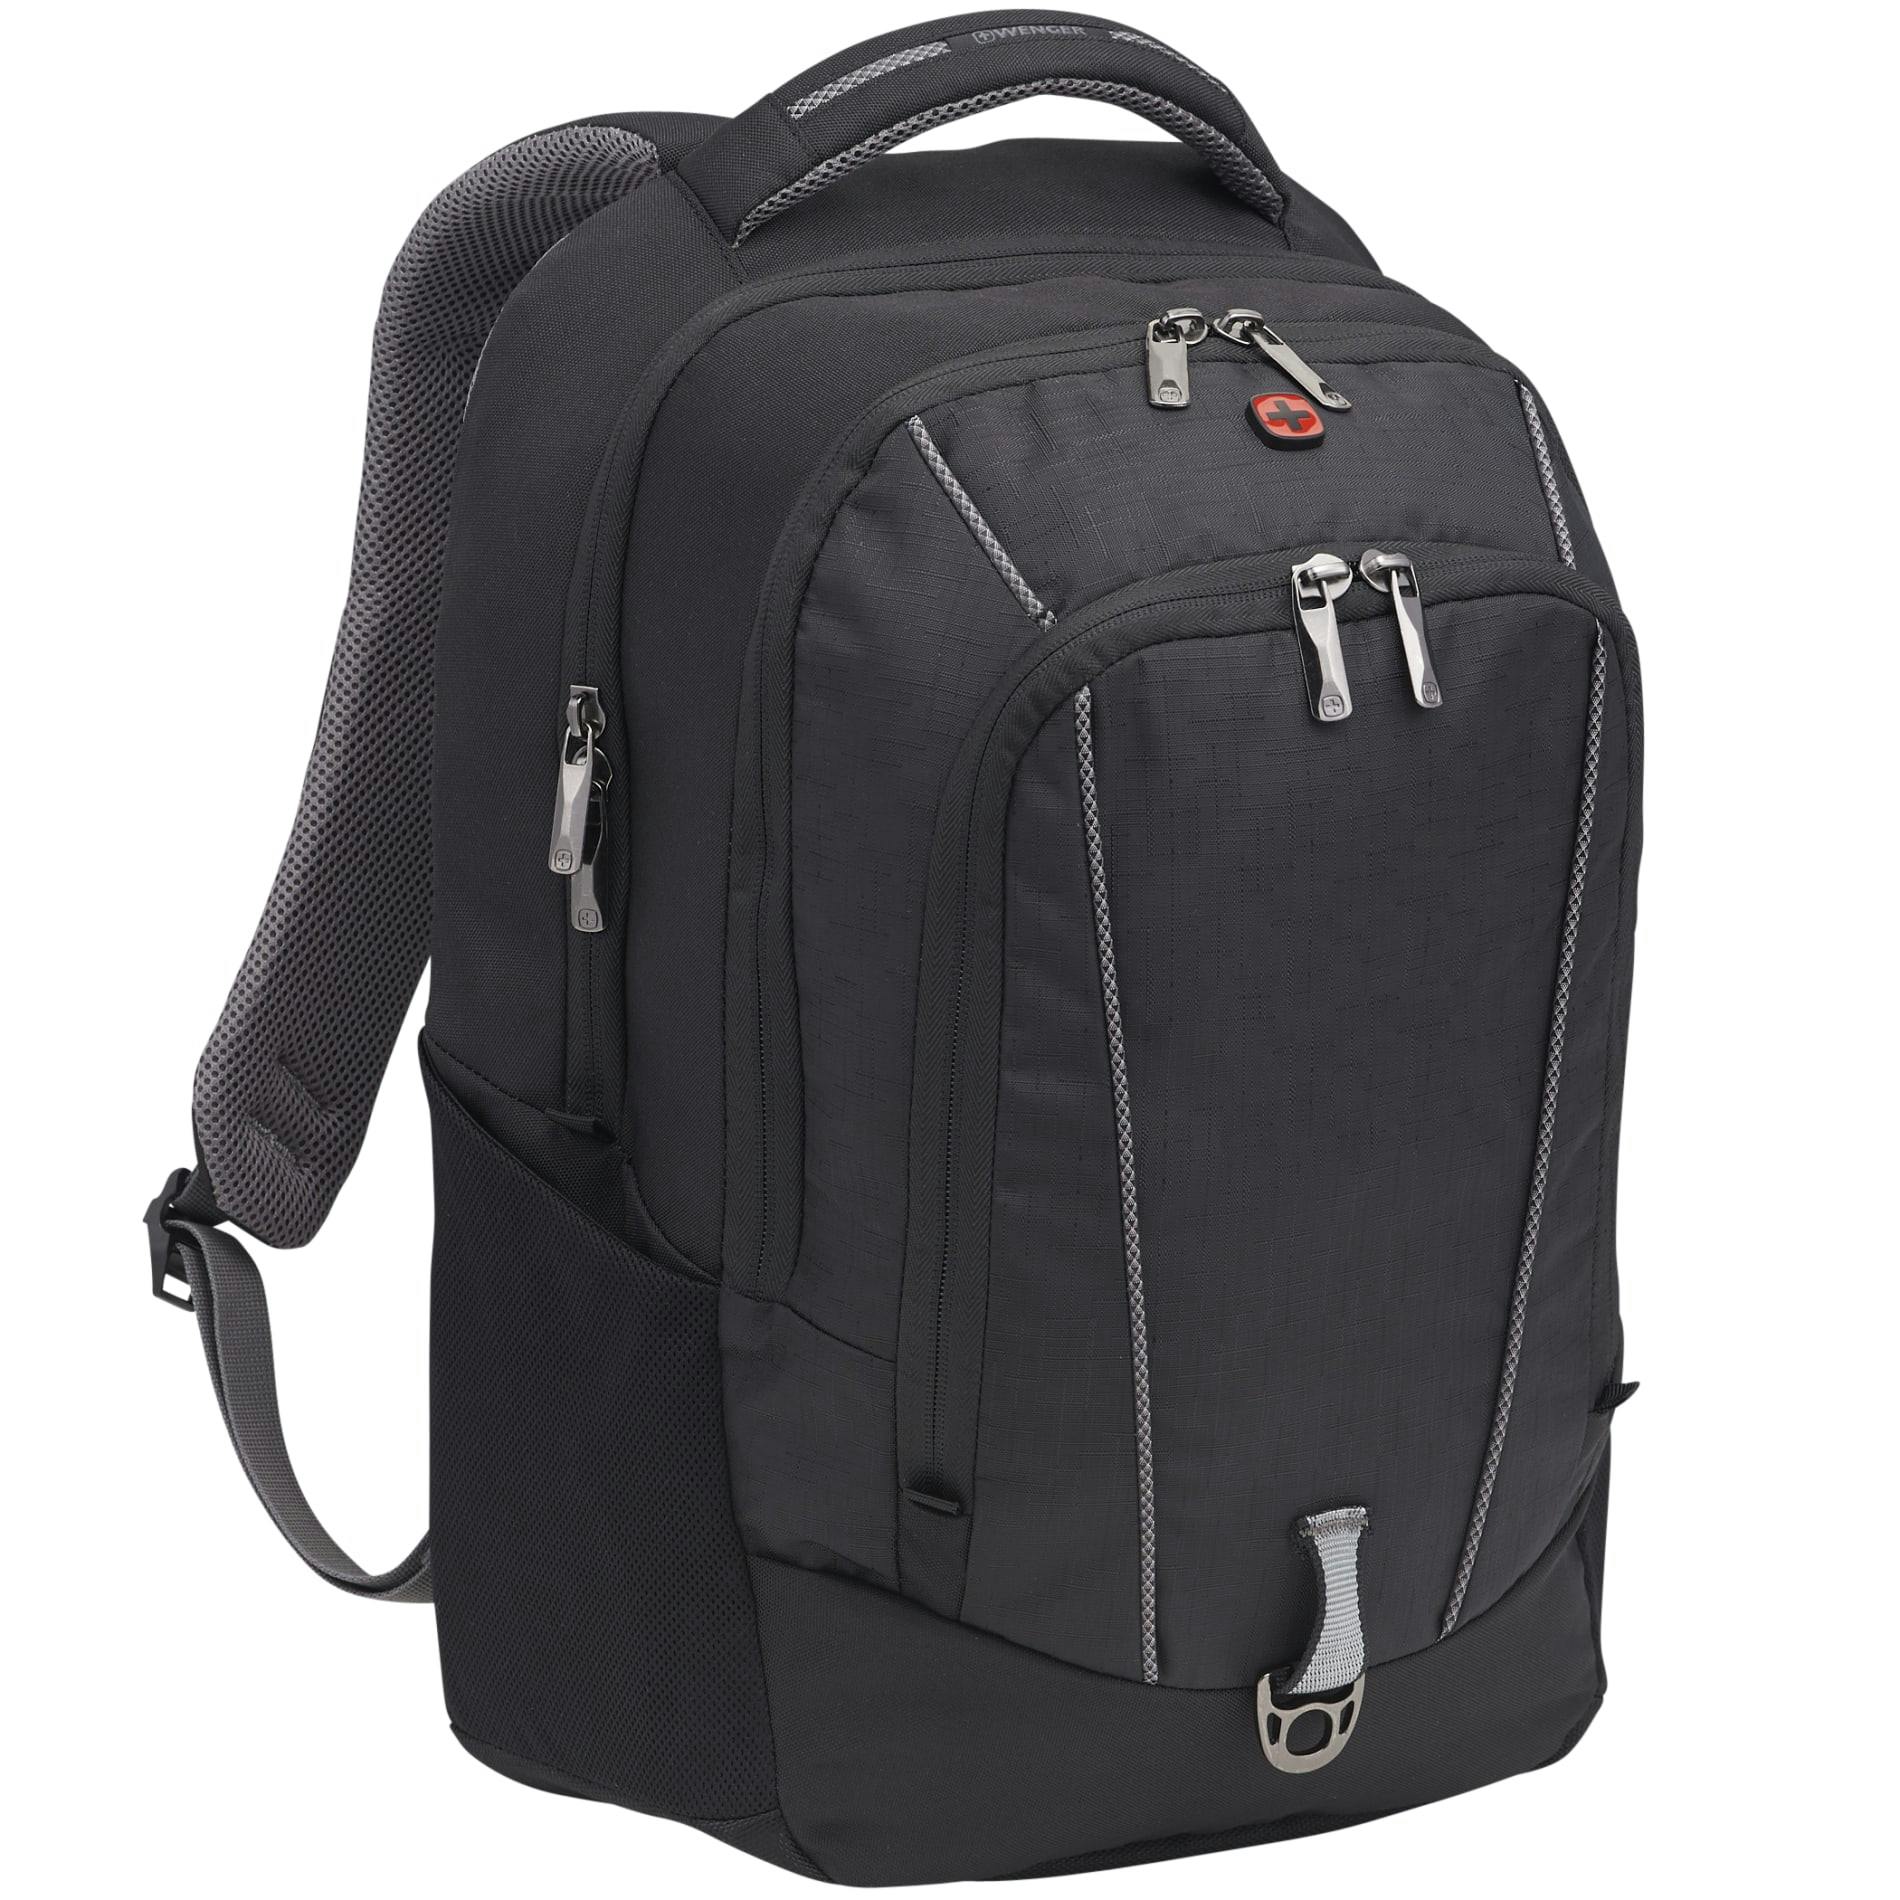 Wenger Pro II 17" Computer Backpack - additional Image 4